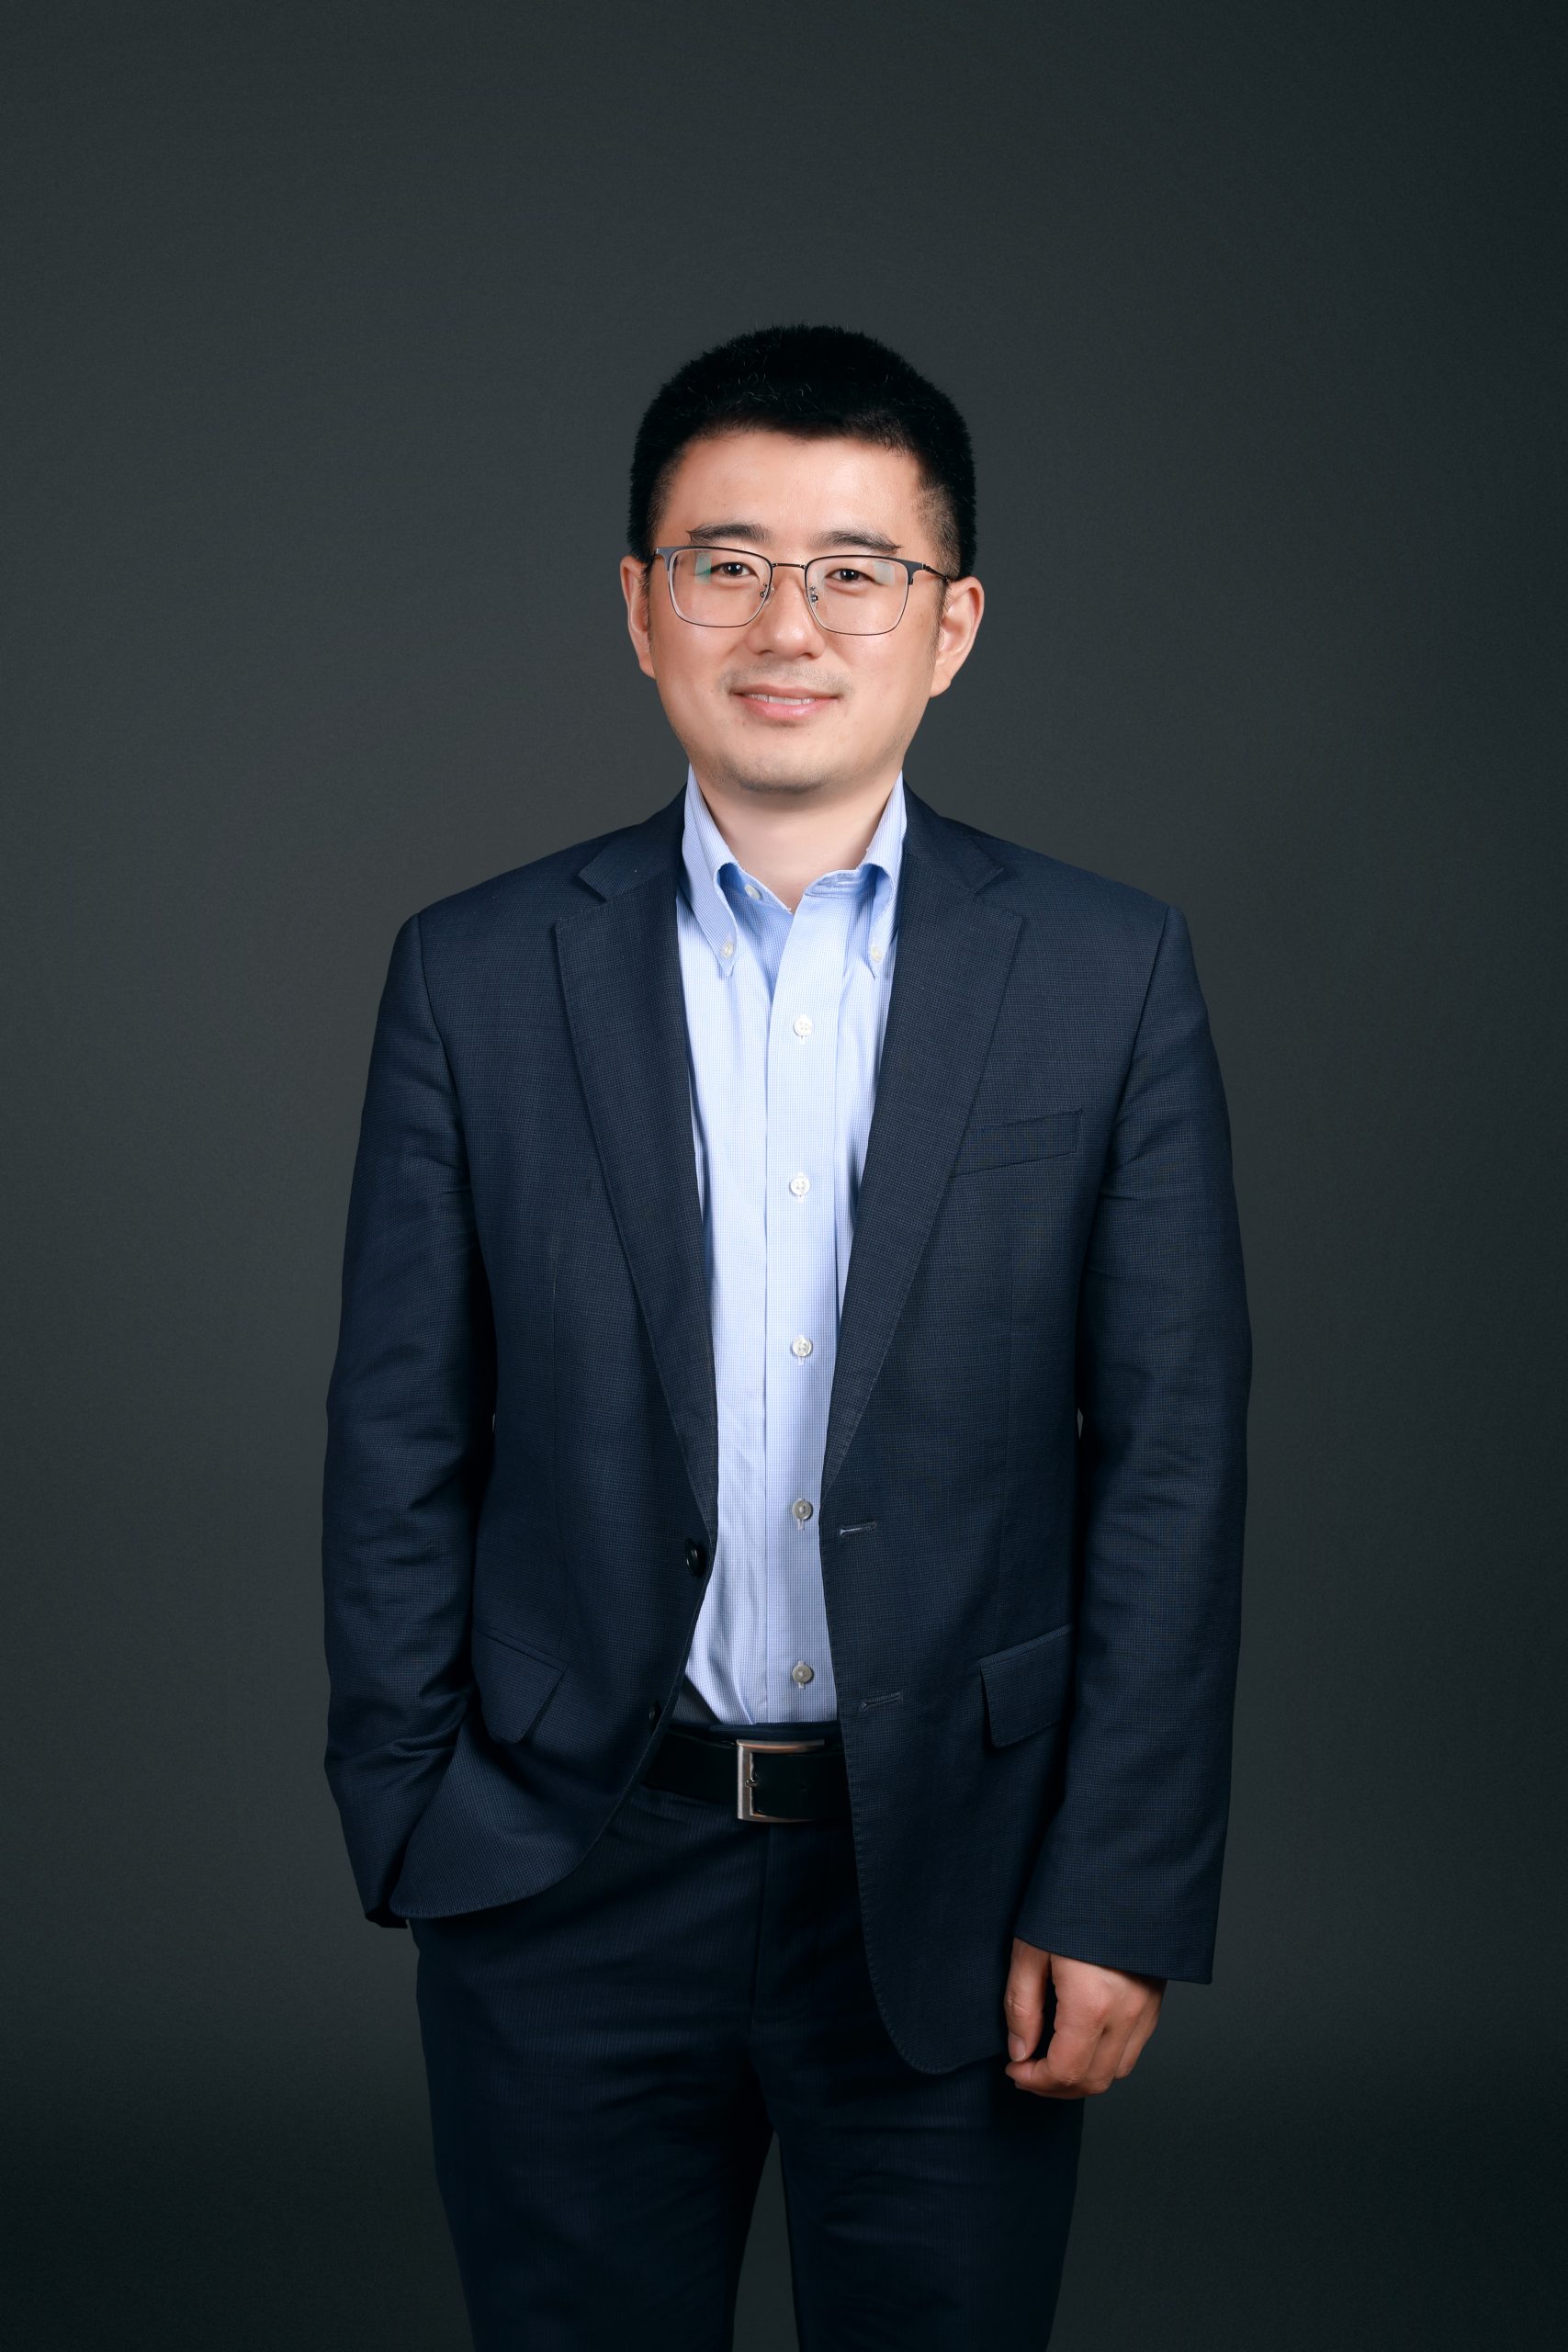 Prof. Guangfu Jin